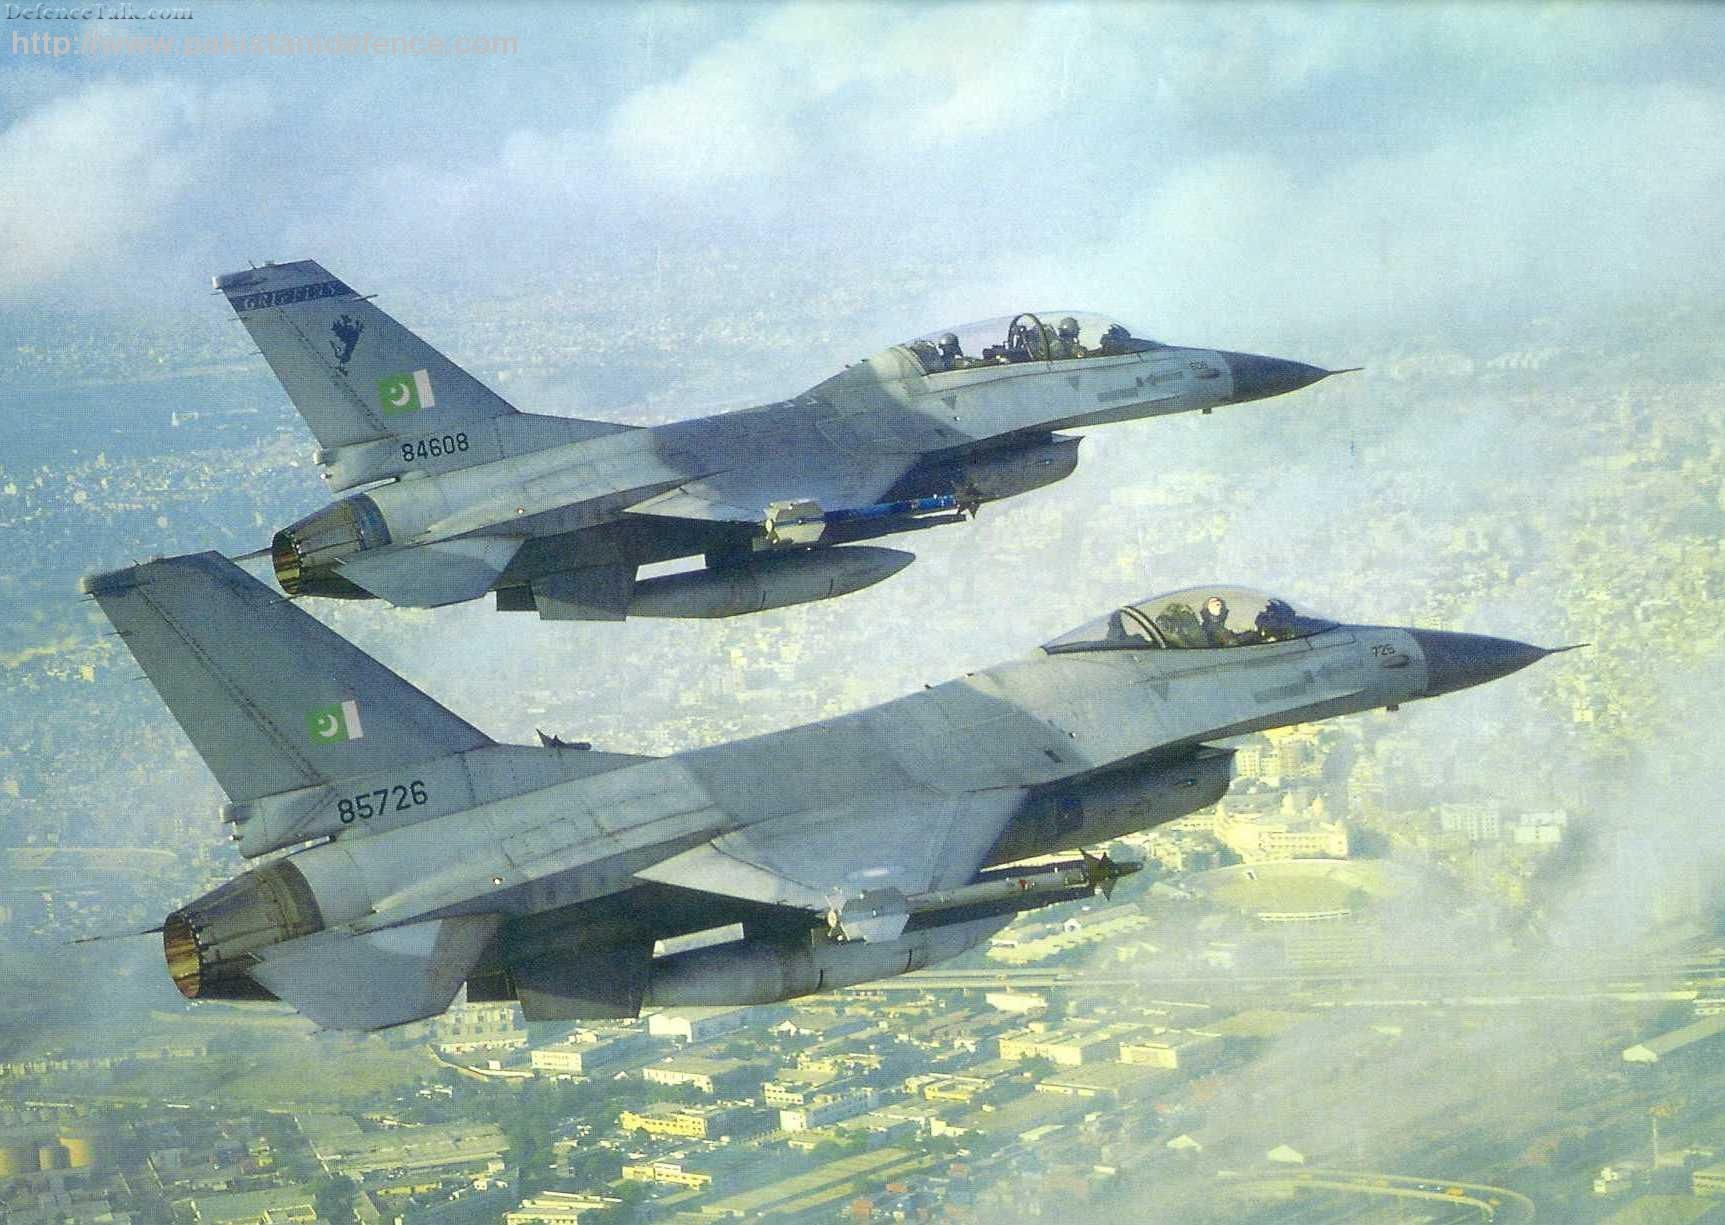 F-16 Fighting Falcon- Multi Role Fighter/Bomber